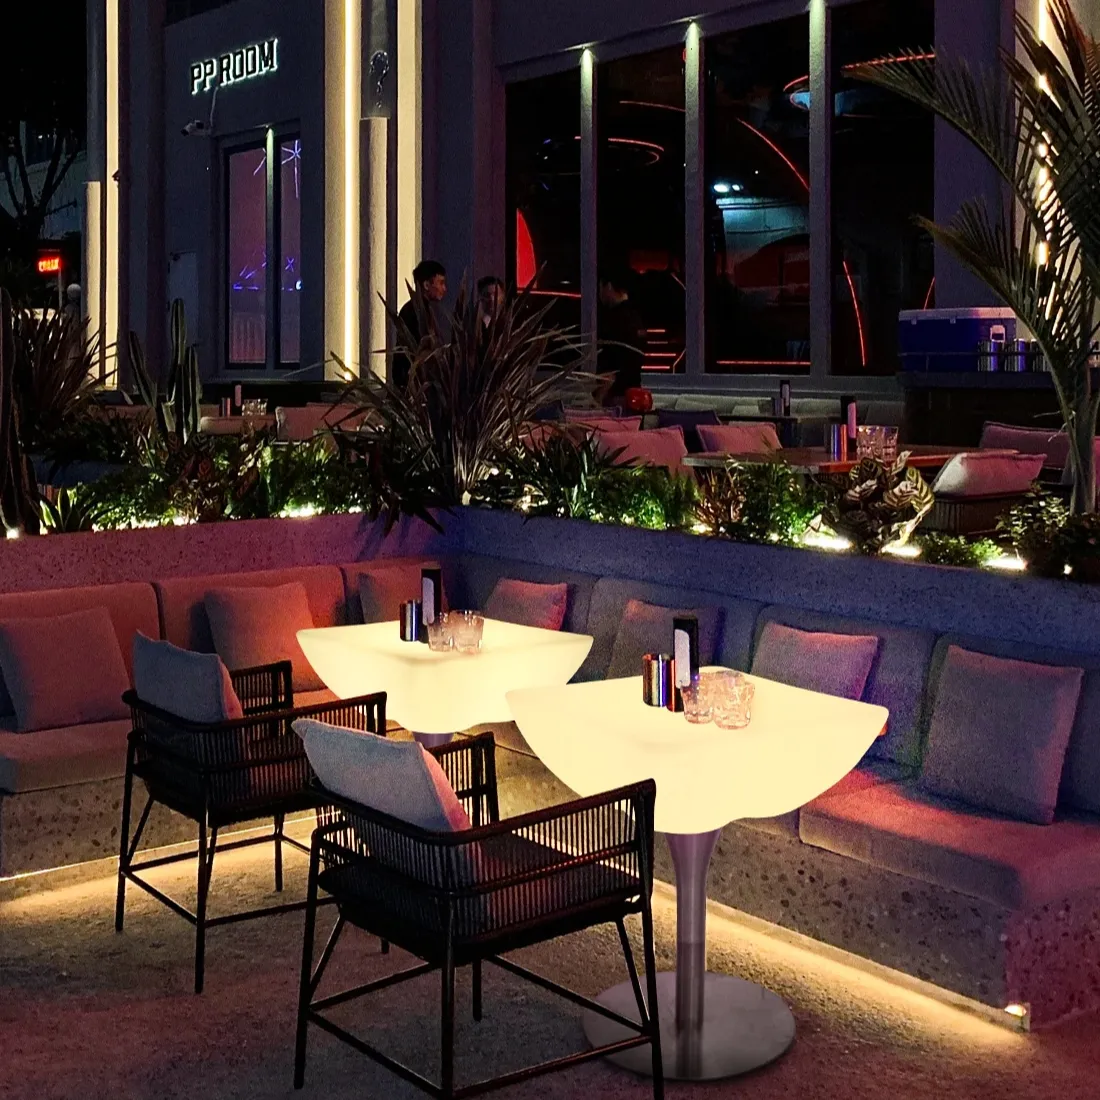 Meja bar led furnitur bar meja makan dengan meja santai klub malam bercahaya led untuk furnitur luar ruangan